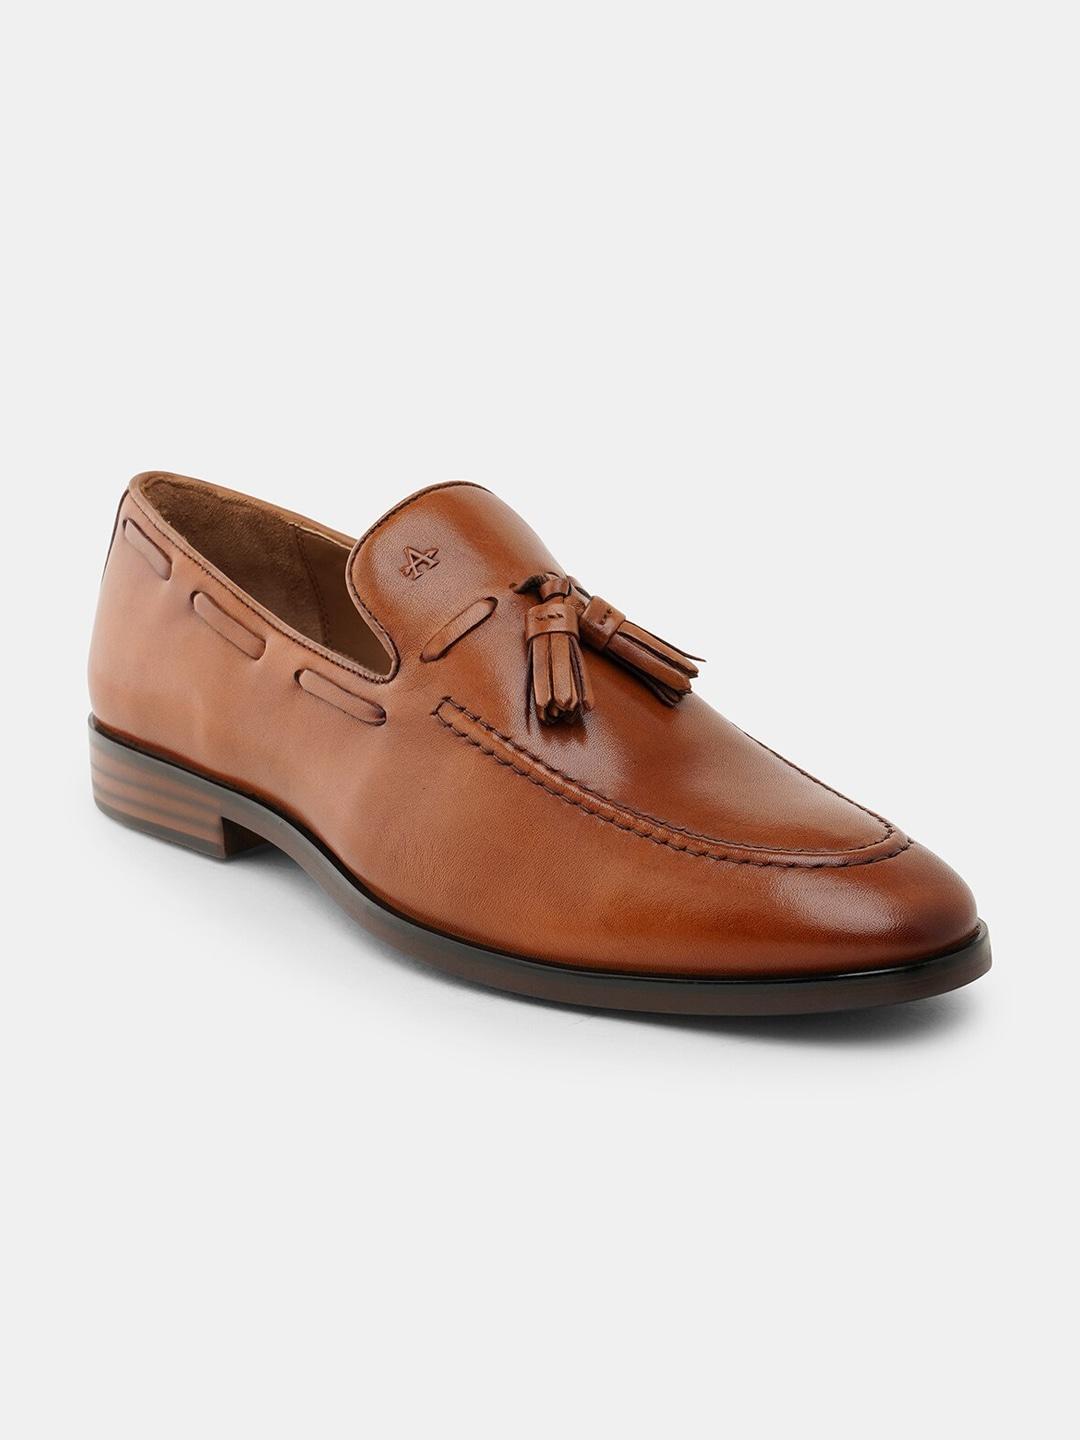 arrow-men-leather-tassel-formal-loafers